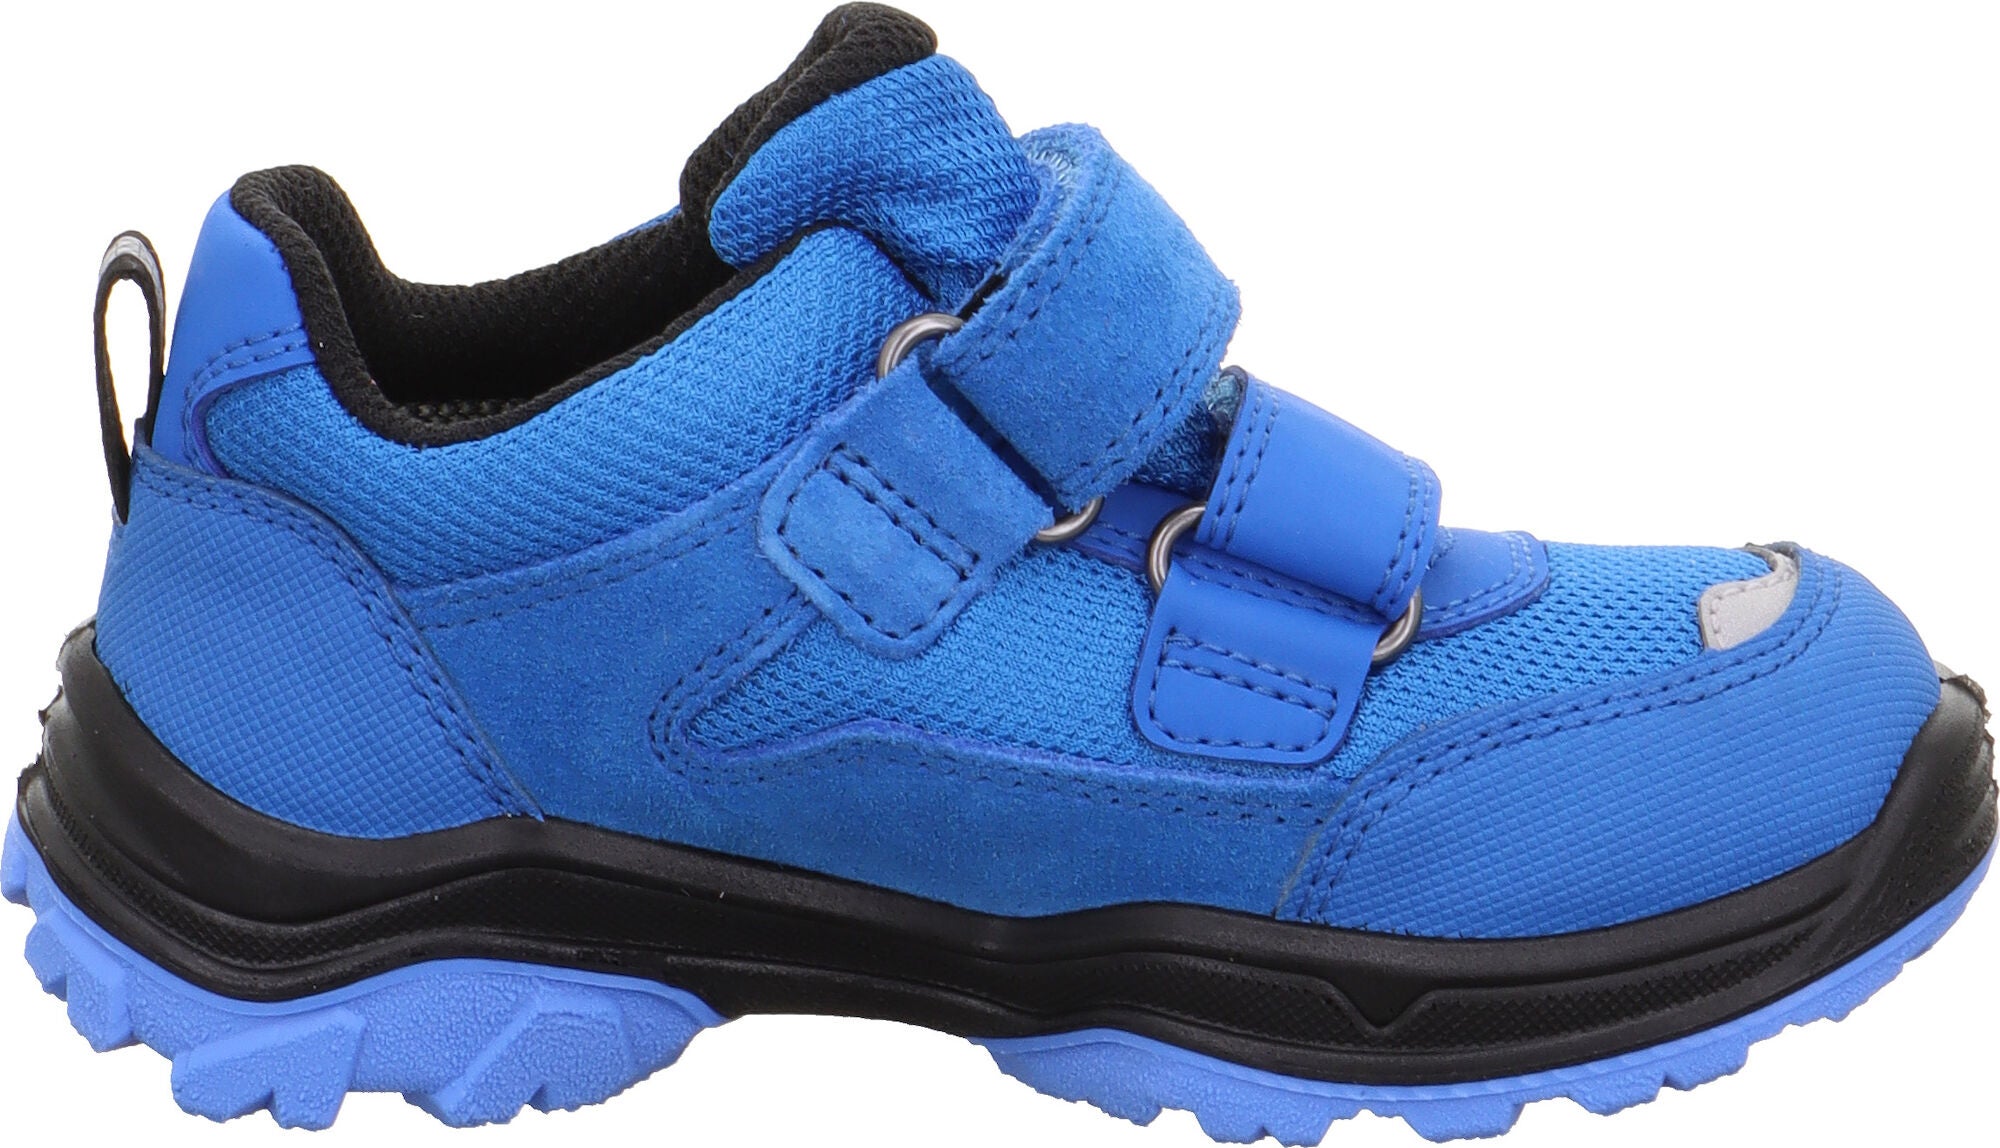 Superfit Jupiter GTX Sneakers|Blue/Black